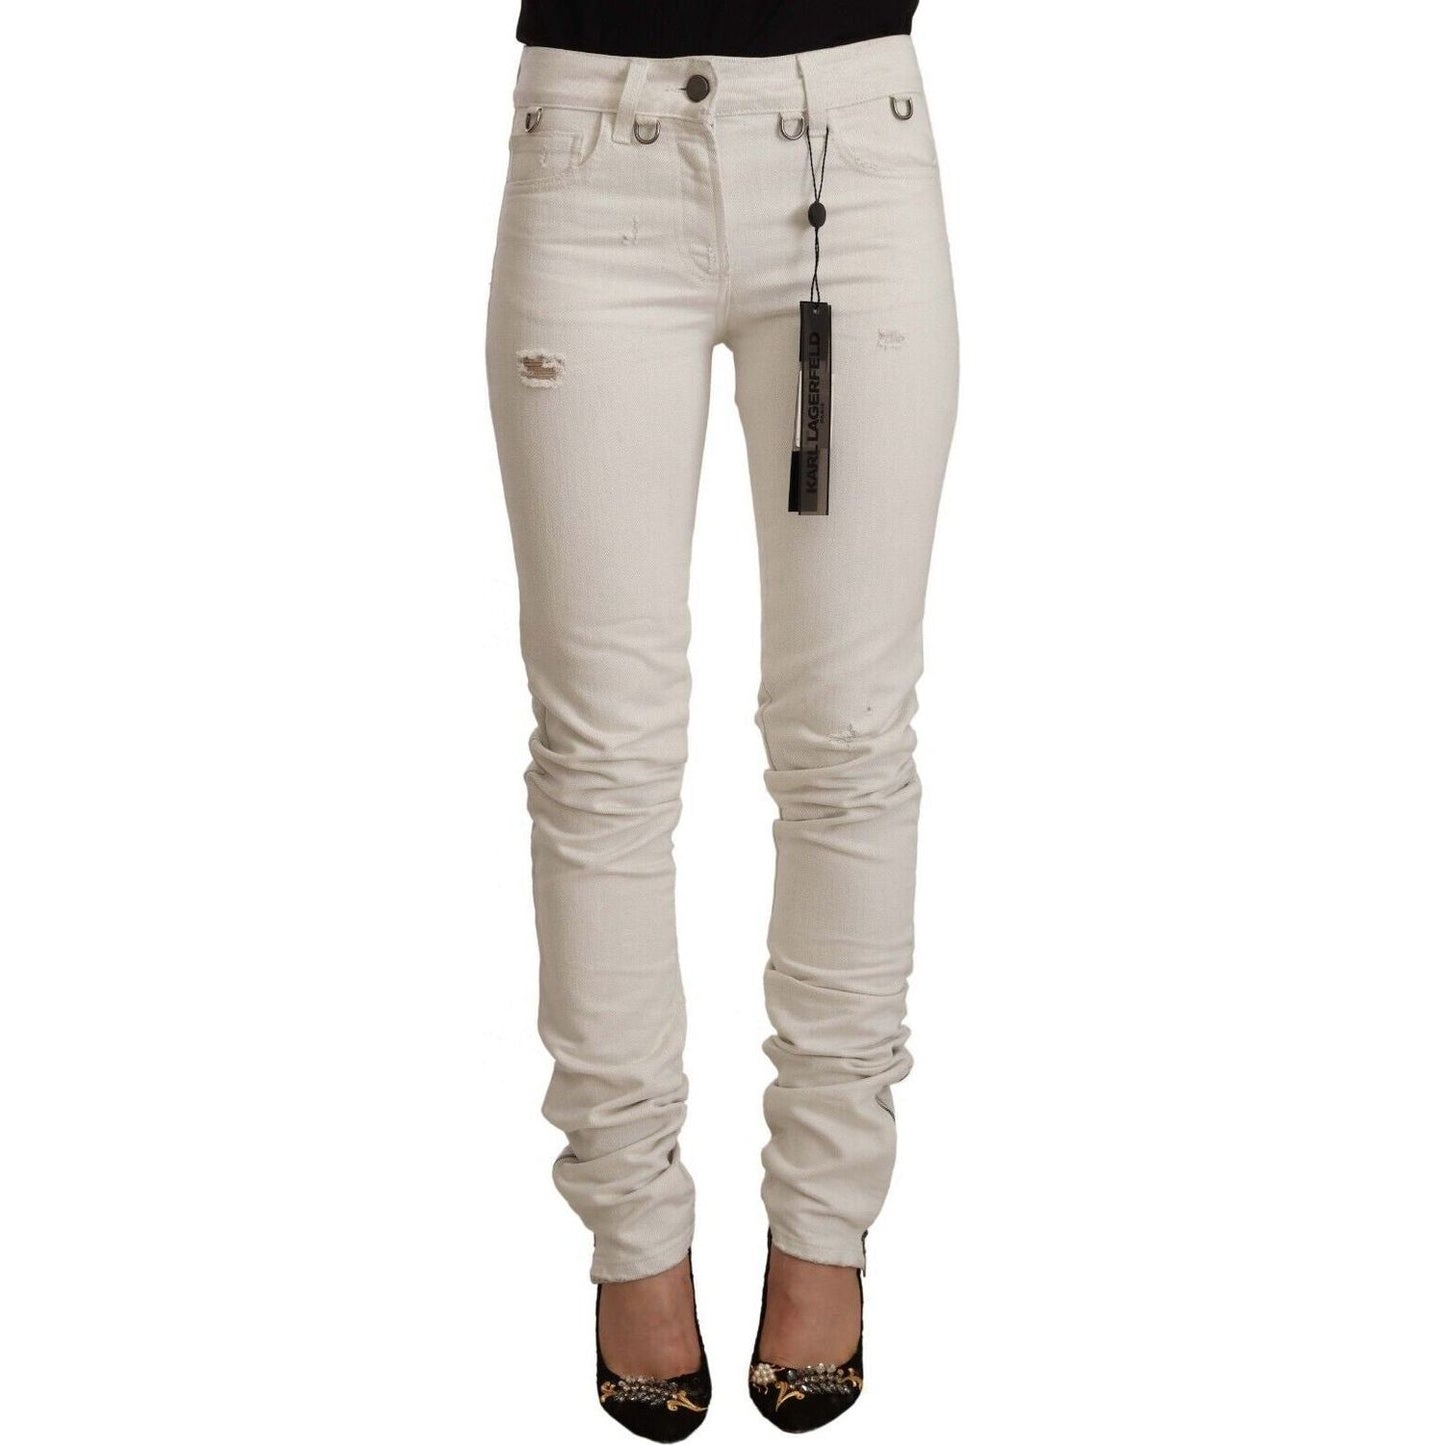 Karl Lagerfeld Chic White Mid-Waist Slim Fit Jeans white-mid-waist-cotton-denim-slim-fit-jeans s-l1600-10-1-0d7f5500-5cc.jpg